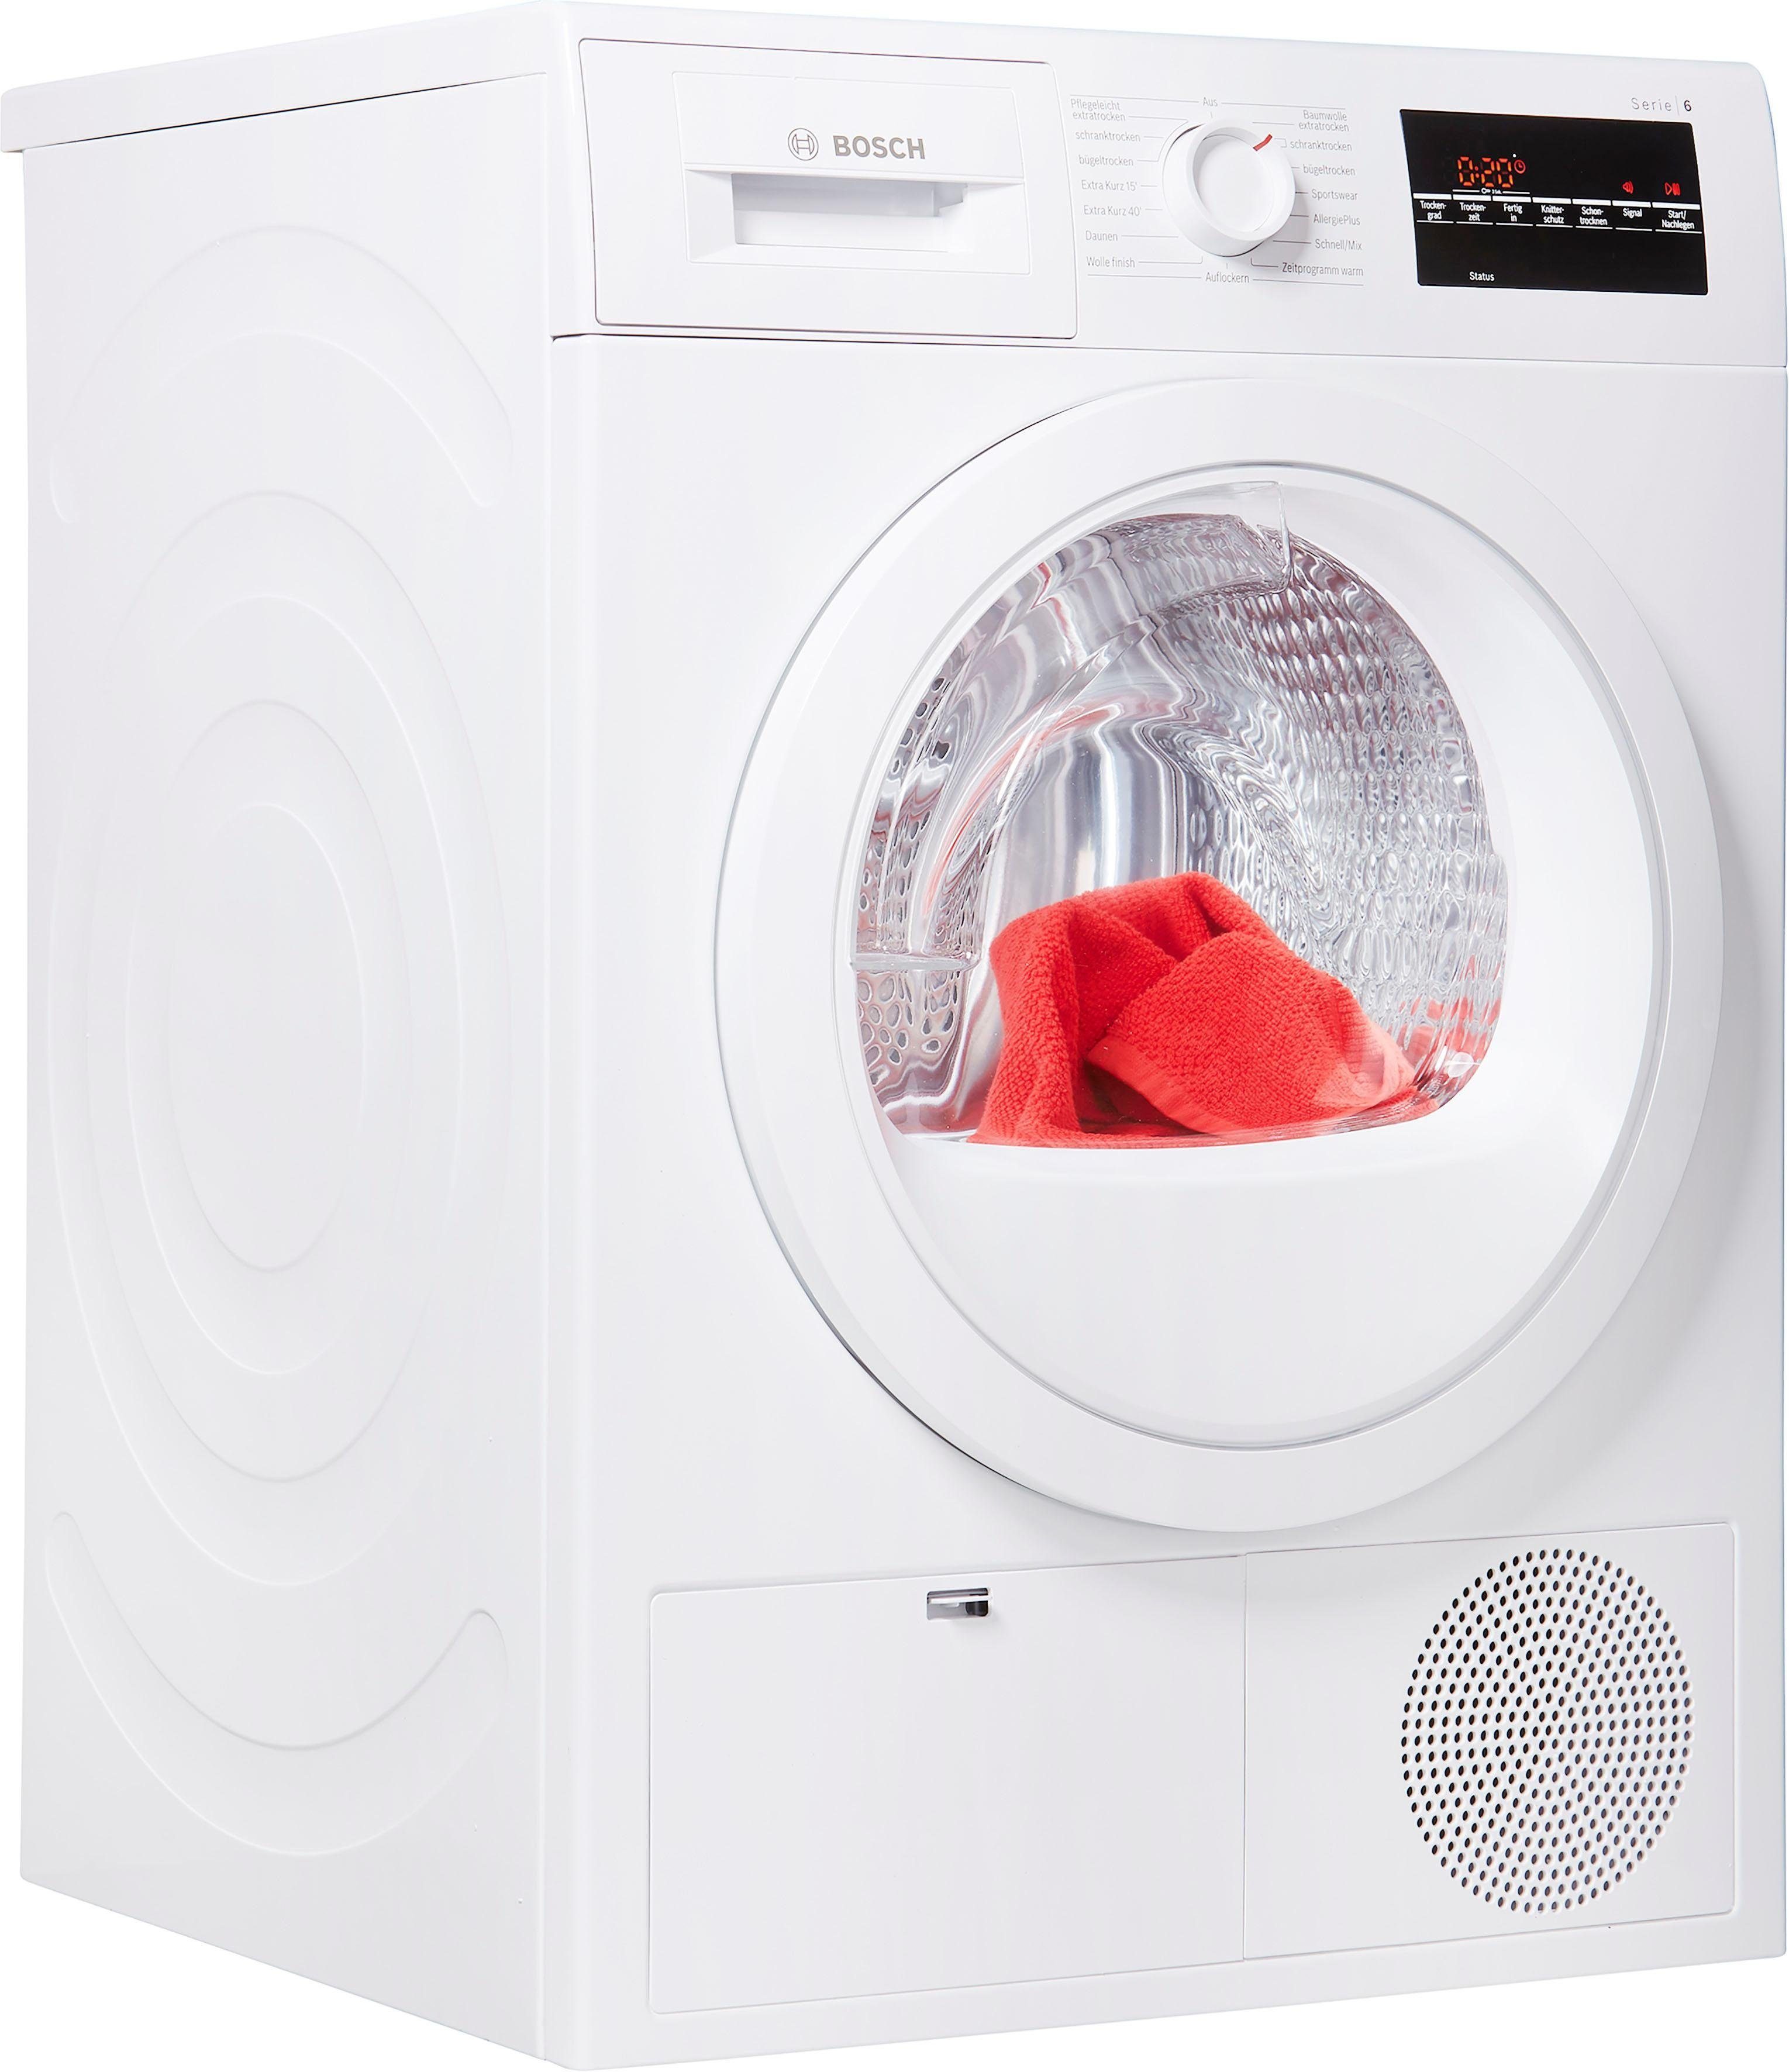 BOSCH Kondenstrockner WTG86402, 9 kg, AutoDry: trocknet Wäsche exakt und  sanft bis zum gewünschten Trocknungsgrad.